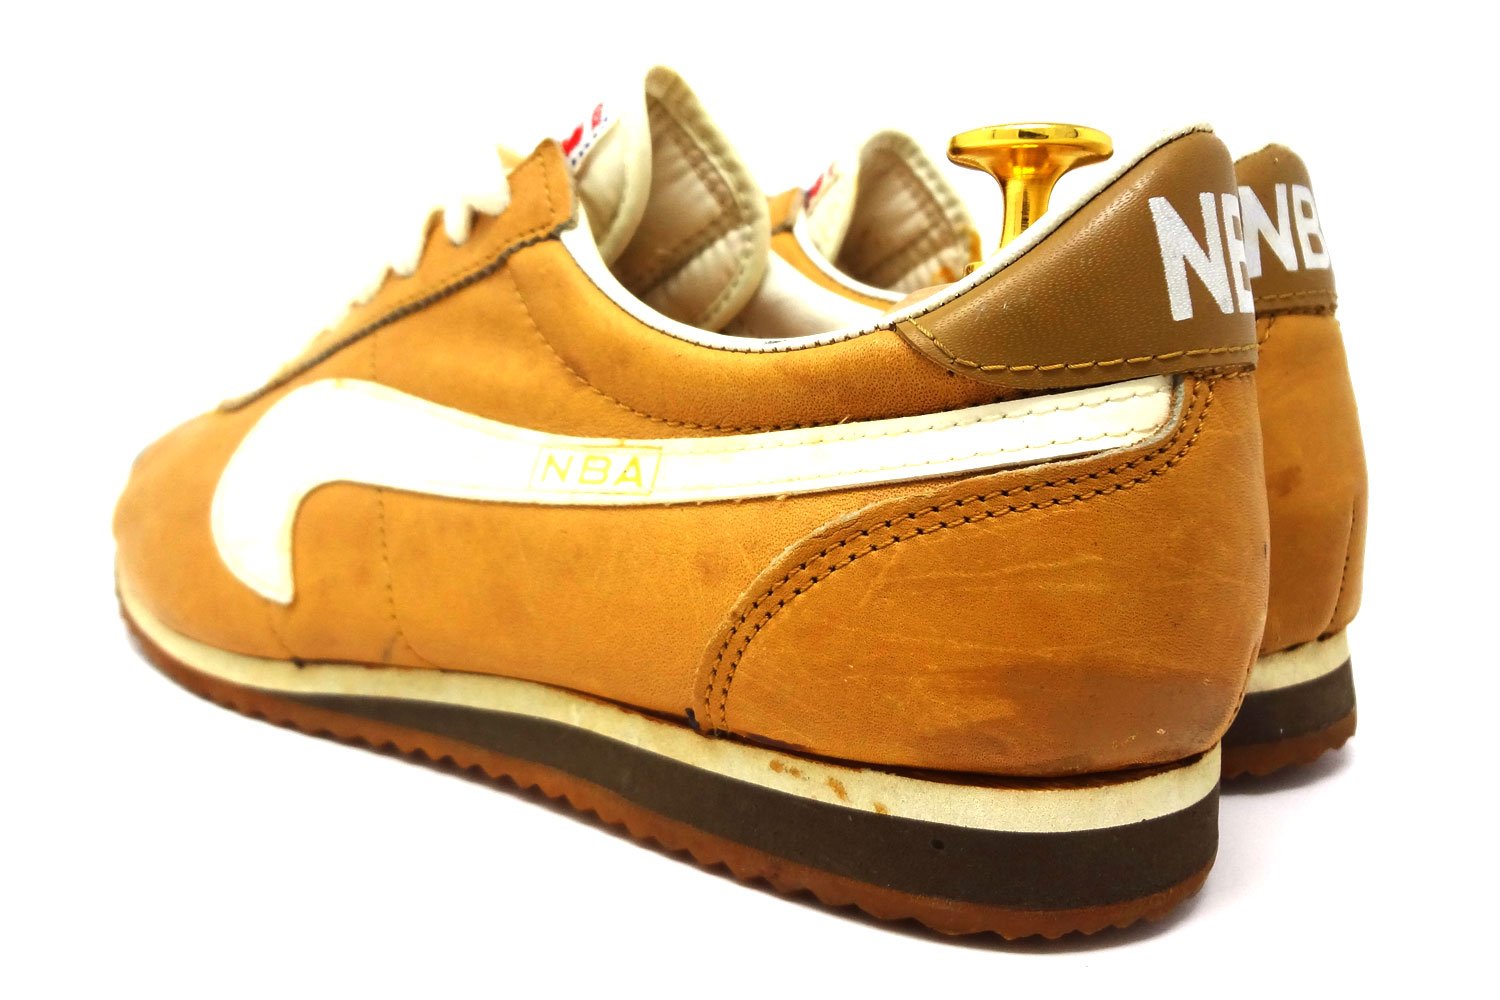 Kinney-NBA-Nike-Le-Village-vintage-sneaker-comparison-rear-3-4a-The-Deffest.jpg